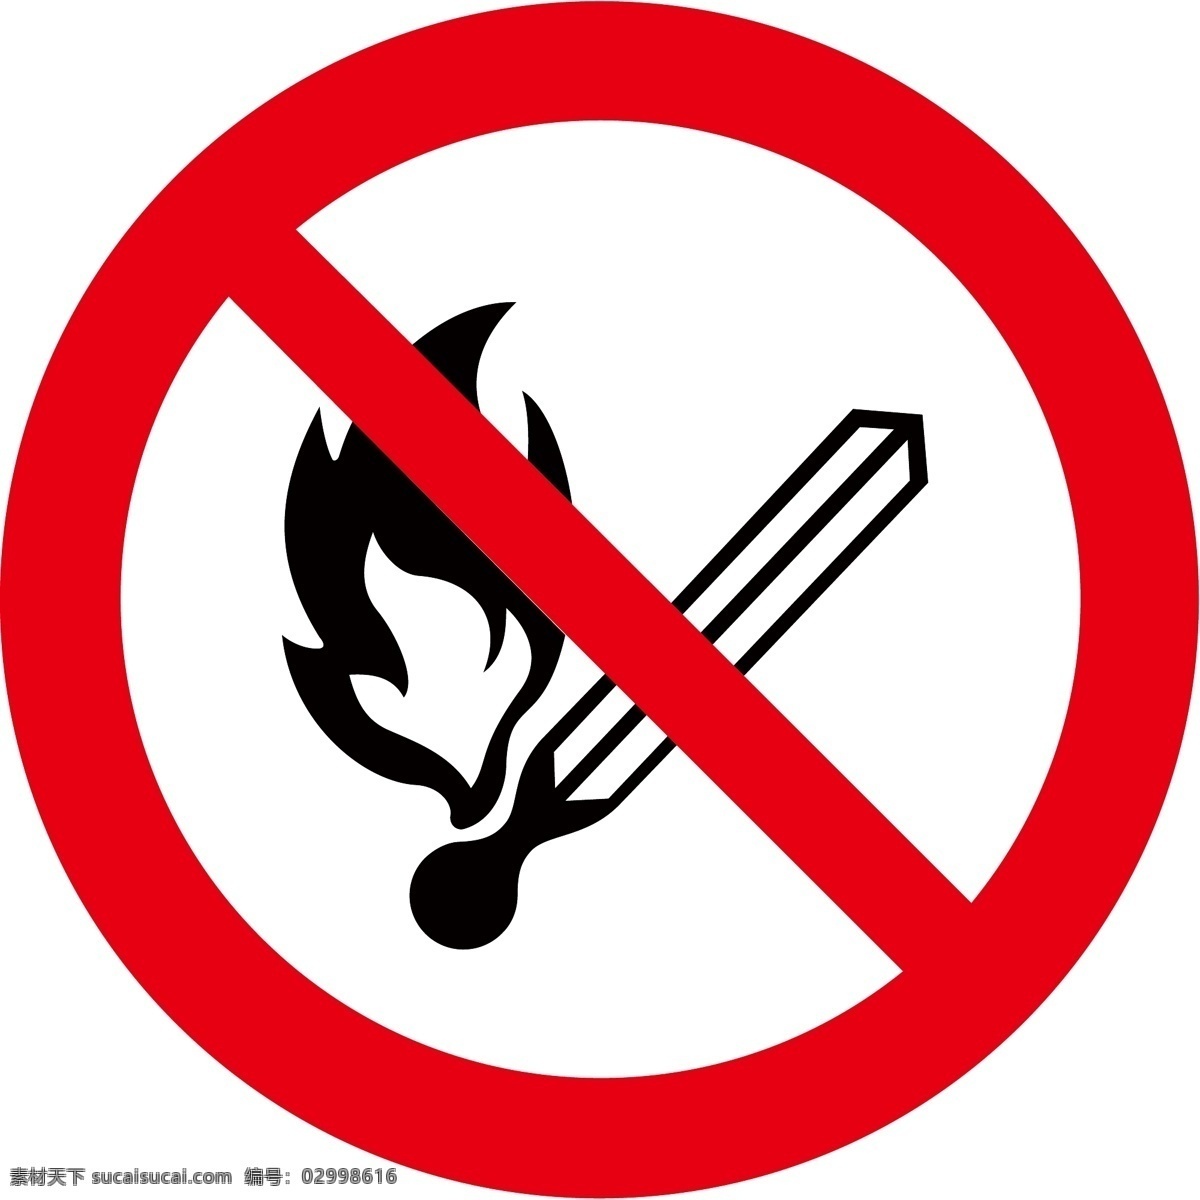 禁止火种 禁止火 小心着火 矢量 eps素材 标志图标 禁止图标 公共标识 矢量标志 公共标识标志